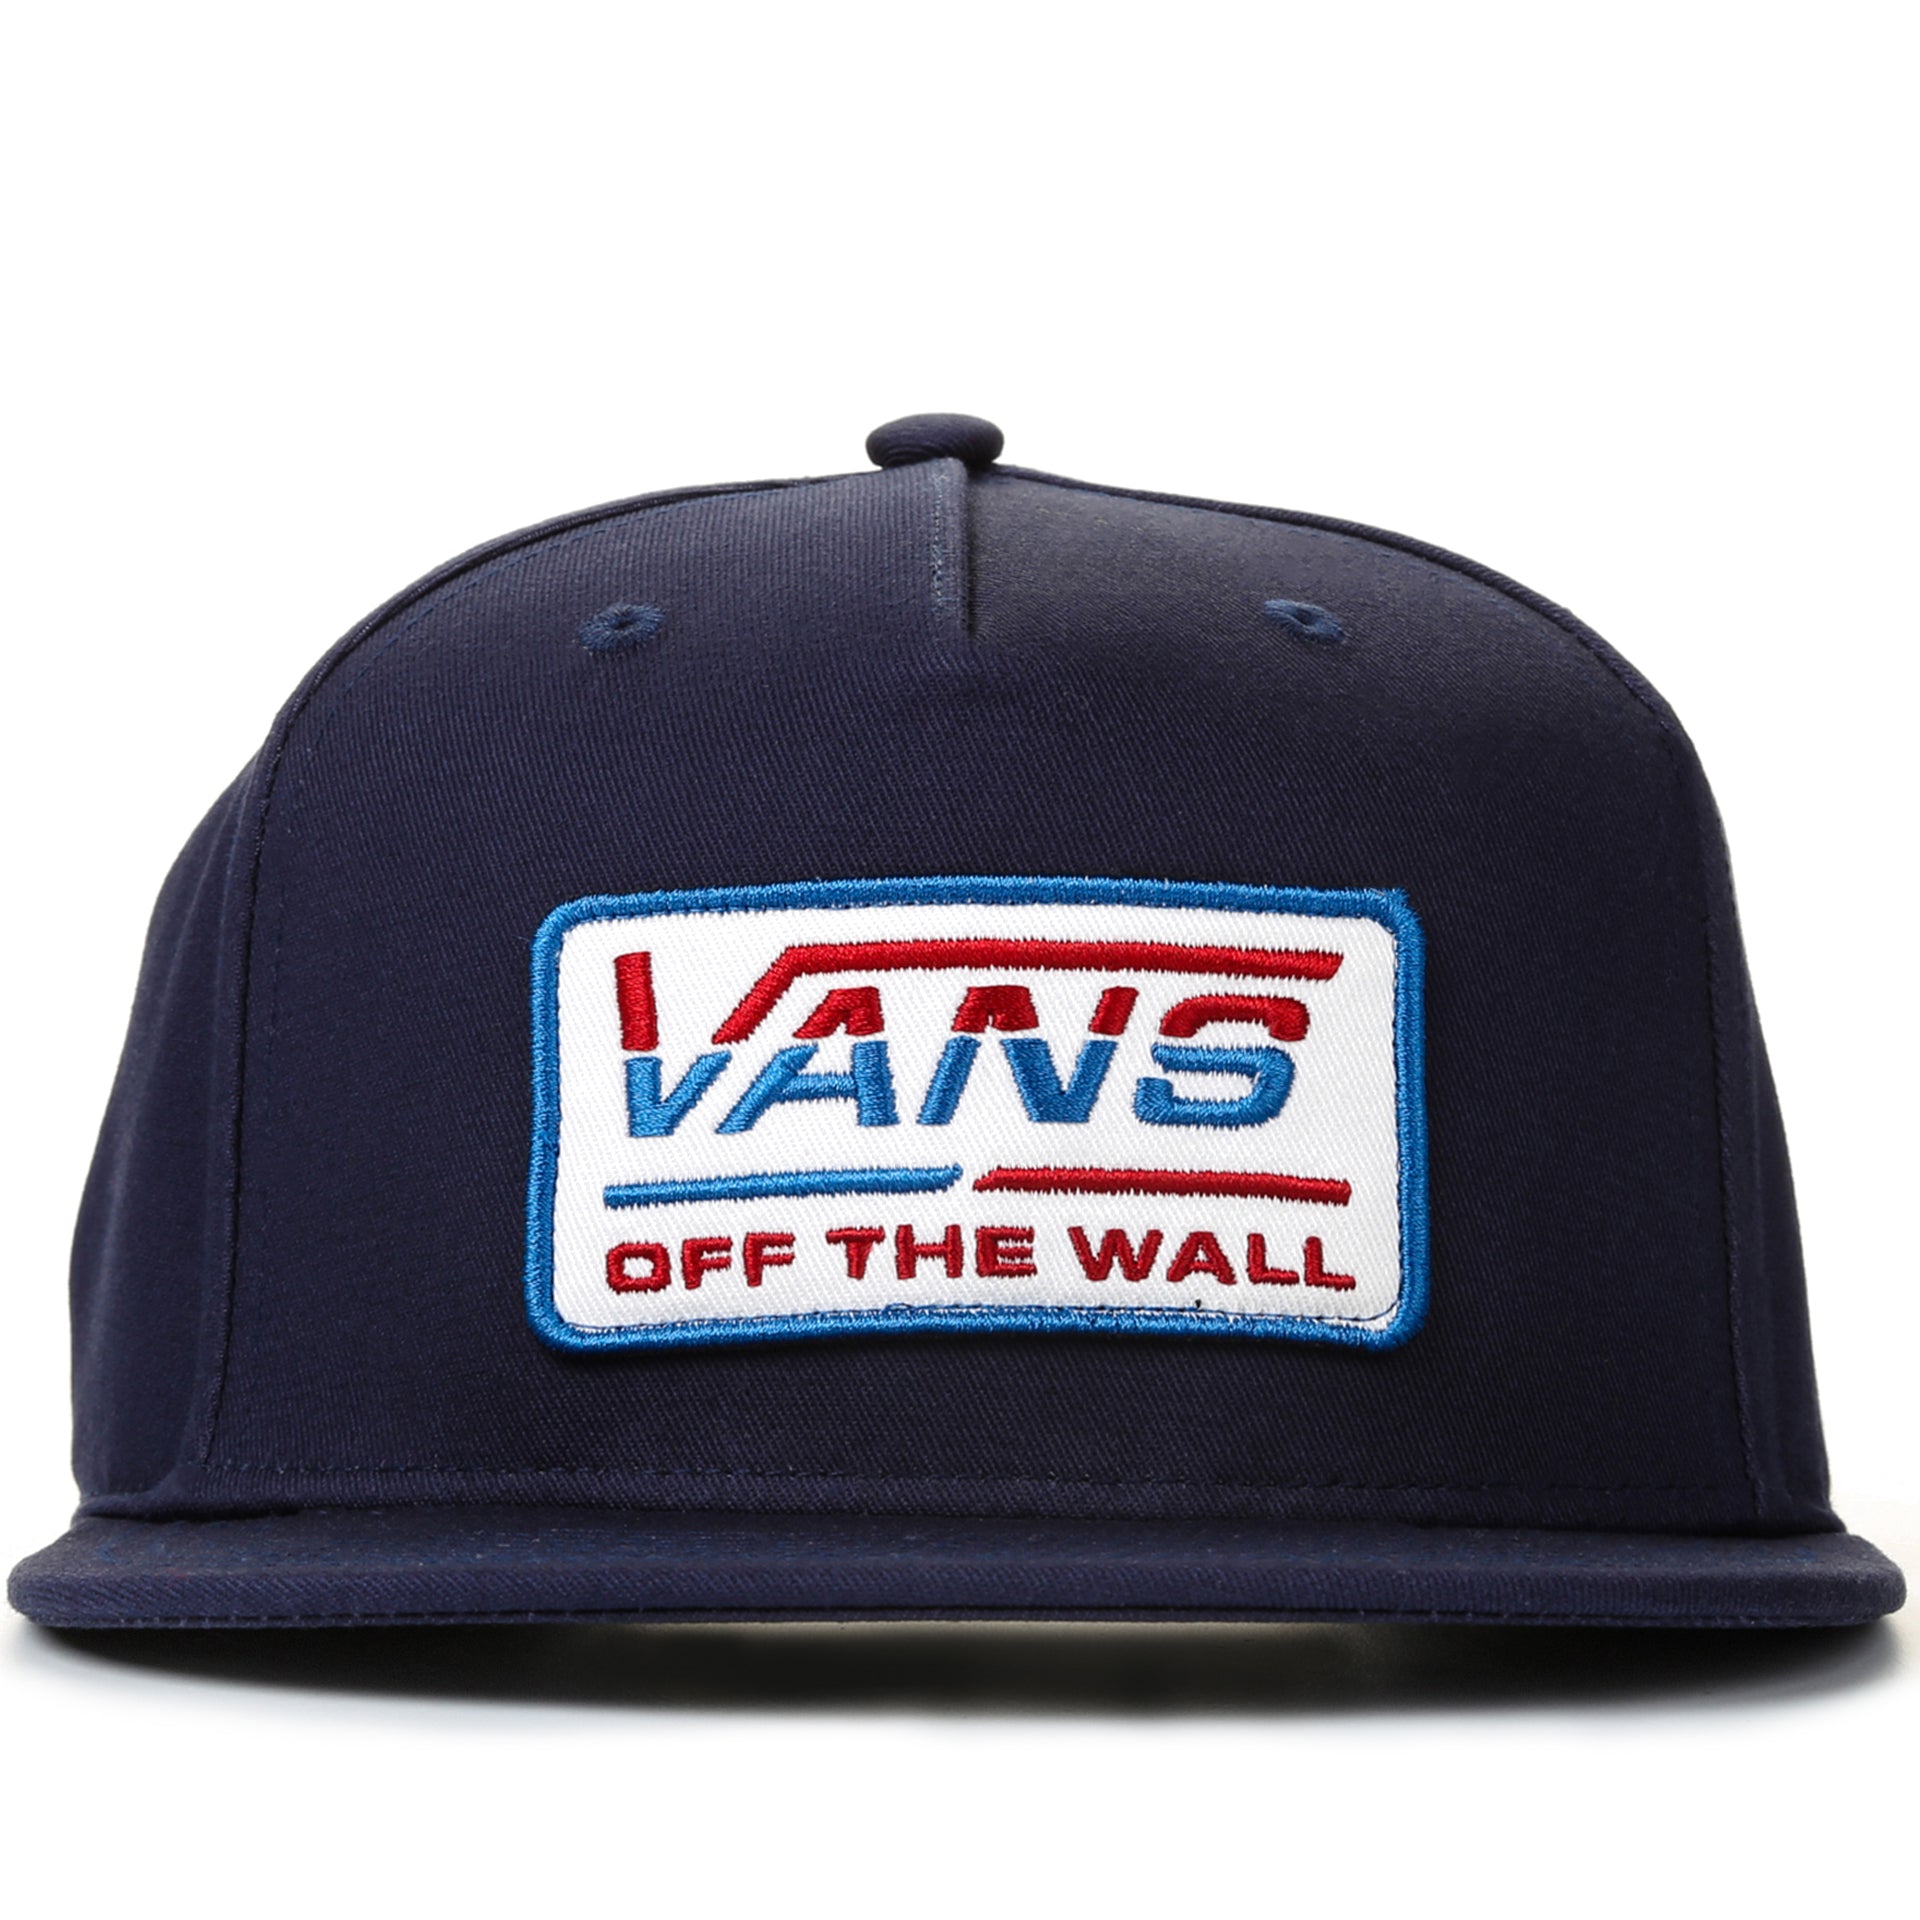 blue vans hat